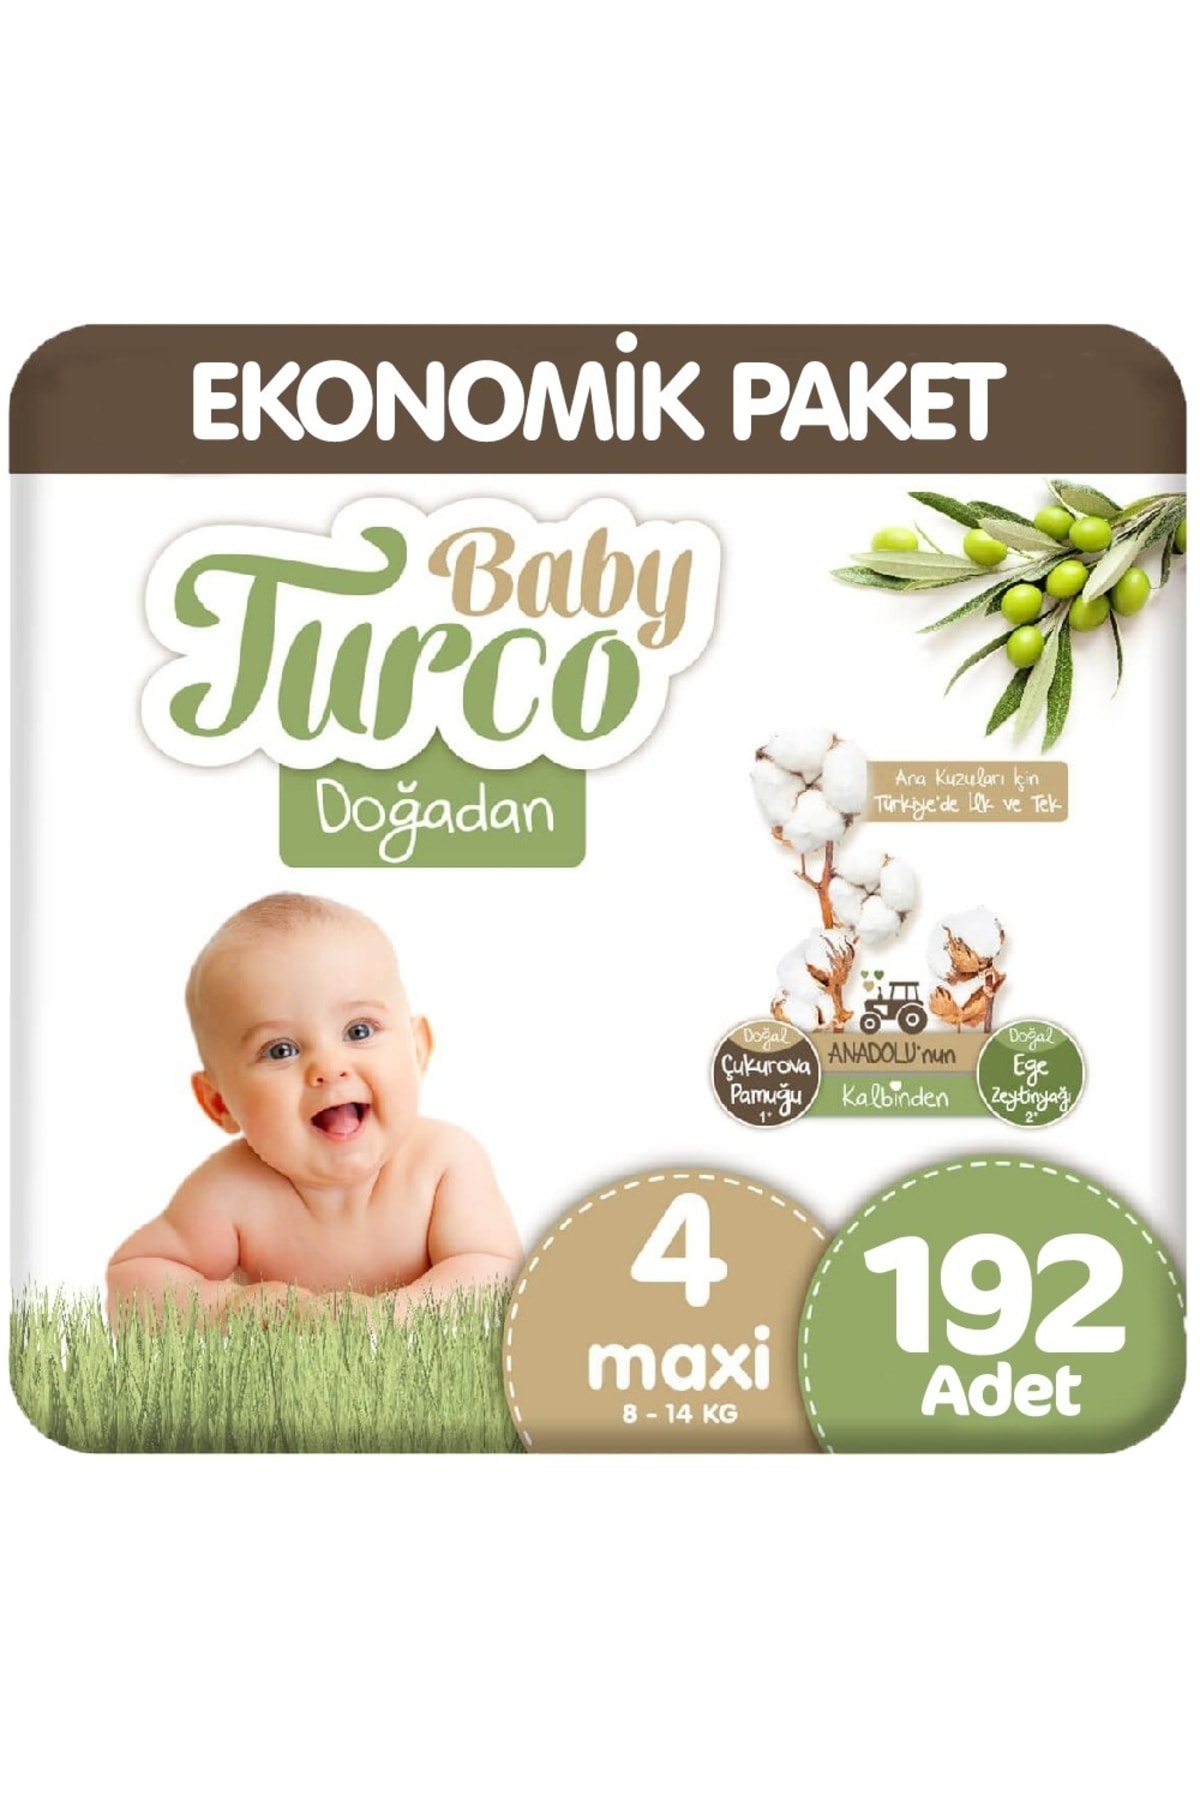 Baby Turco Doğadan 4 Beden Ekonomik 48x4 192 Adet UX7244